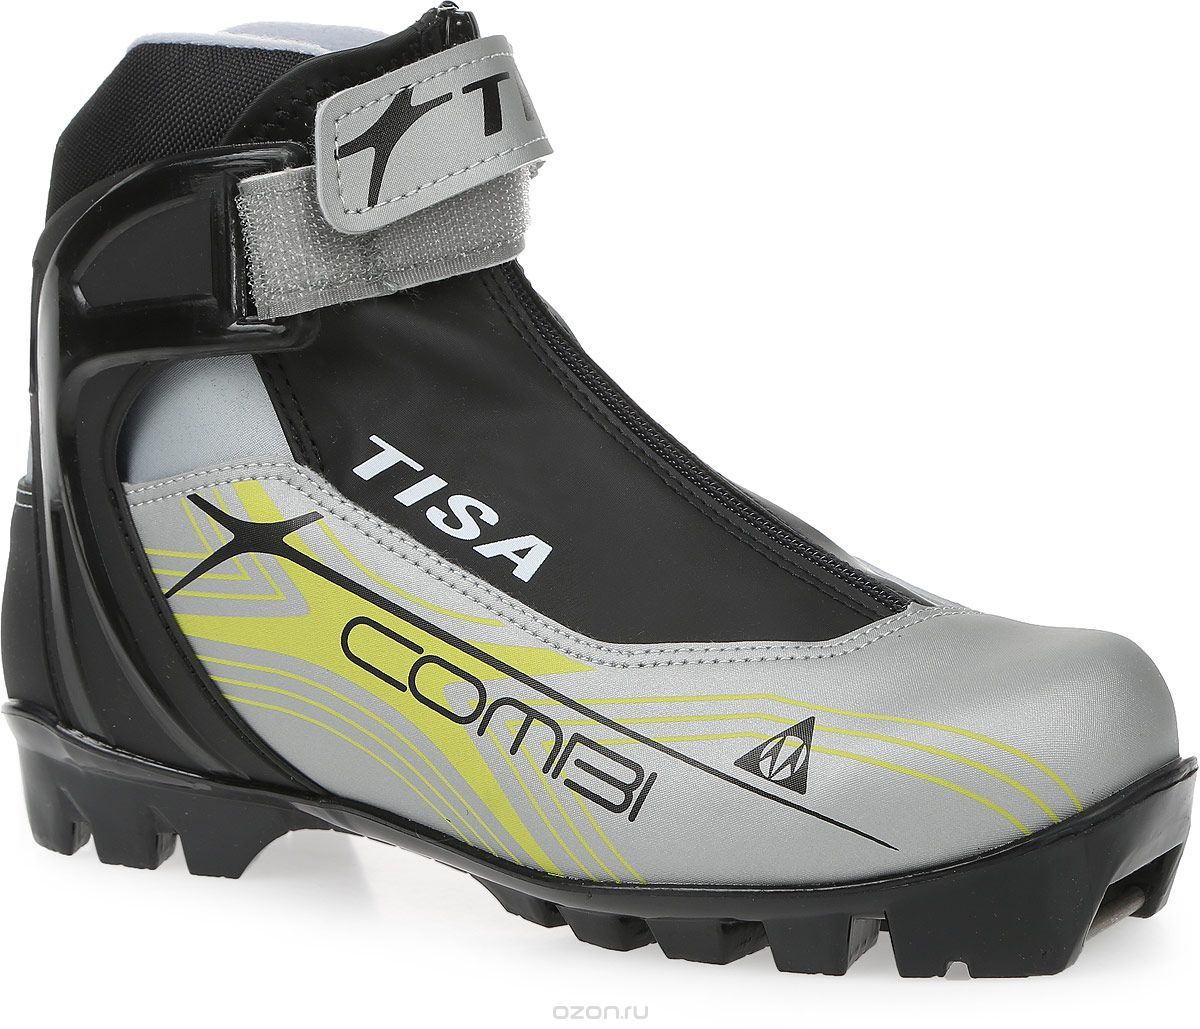 Ботинки лыжные TISA  "Combi" NNN 